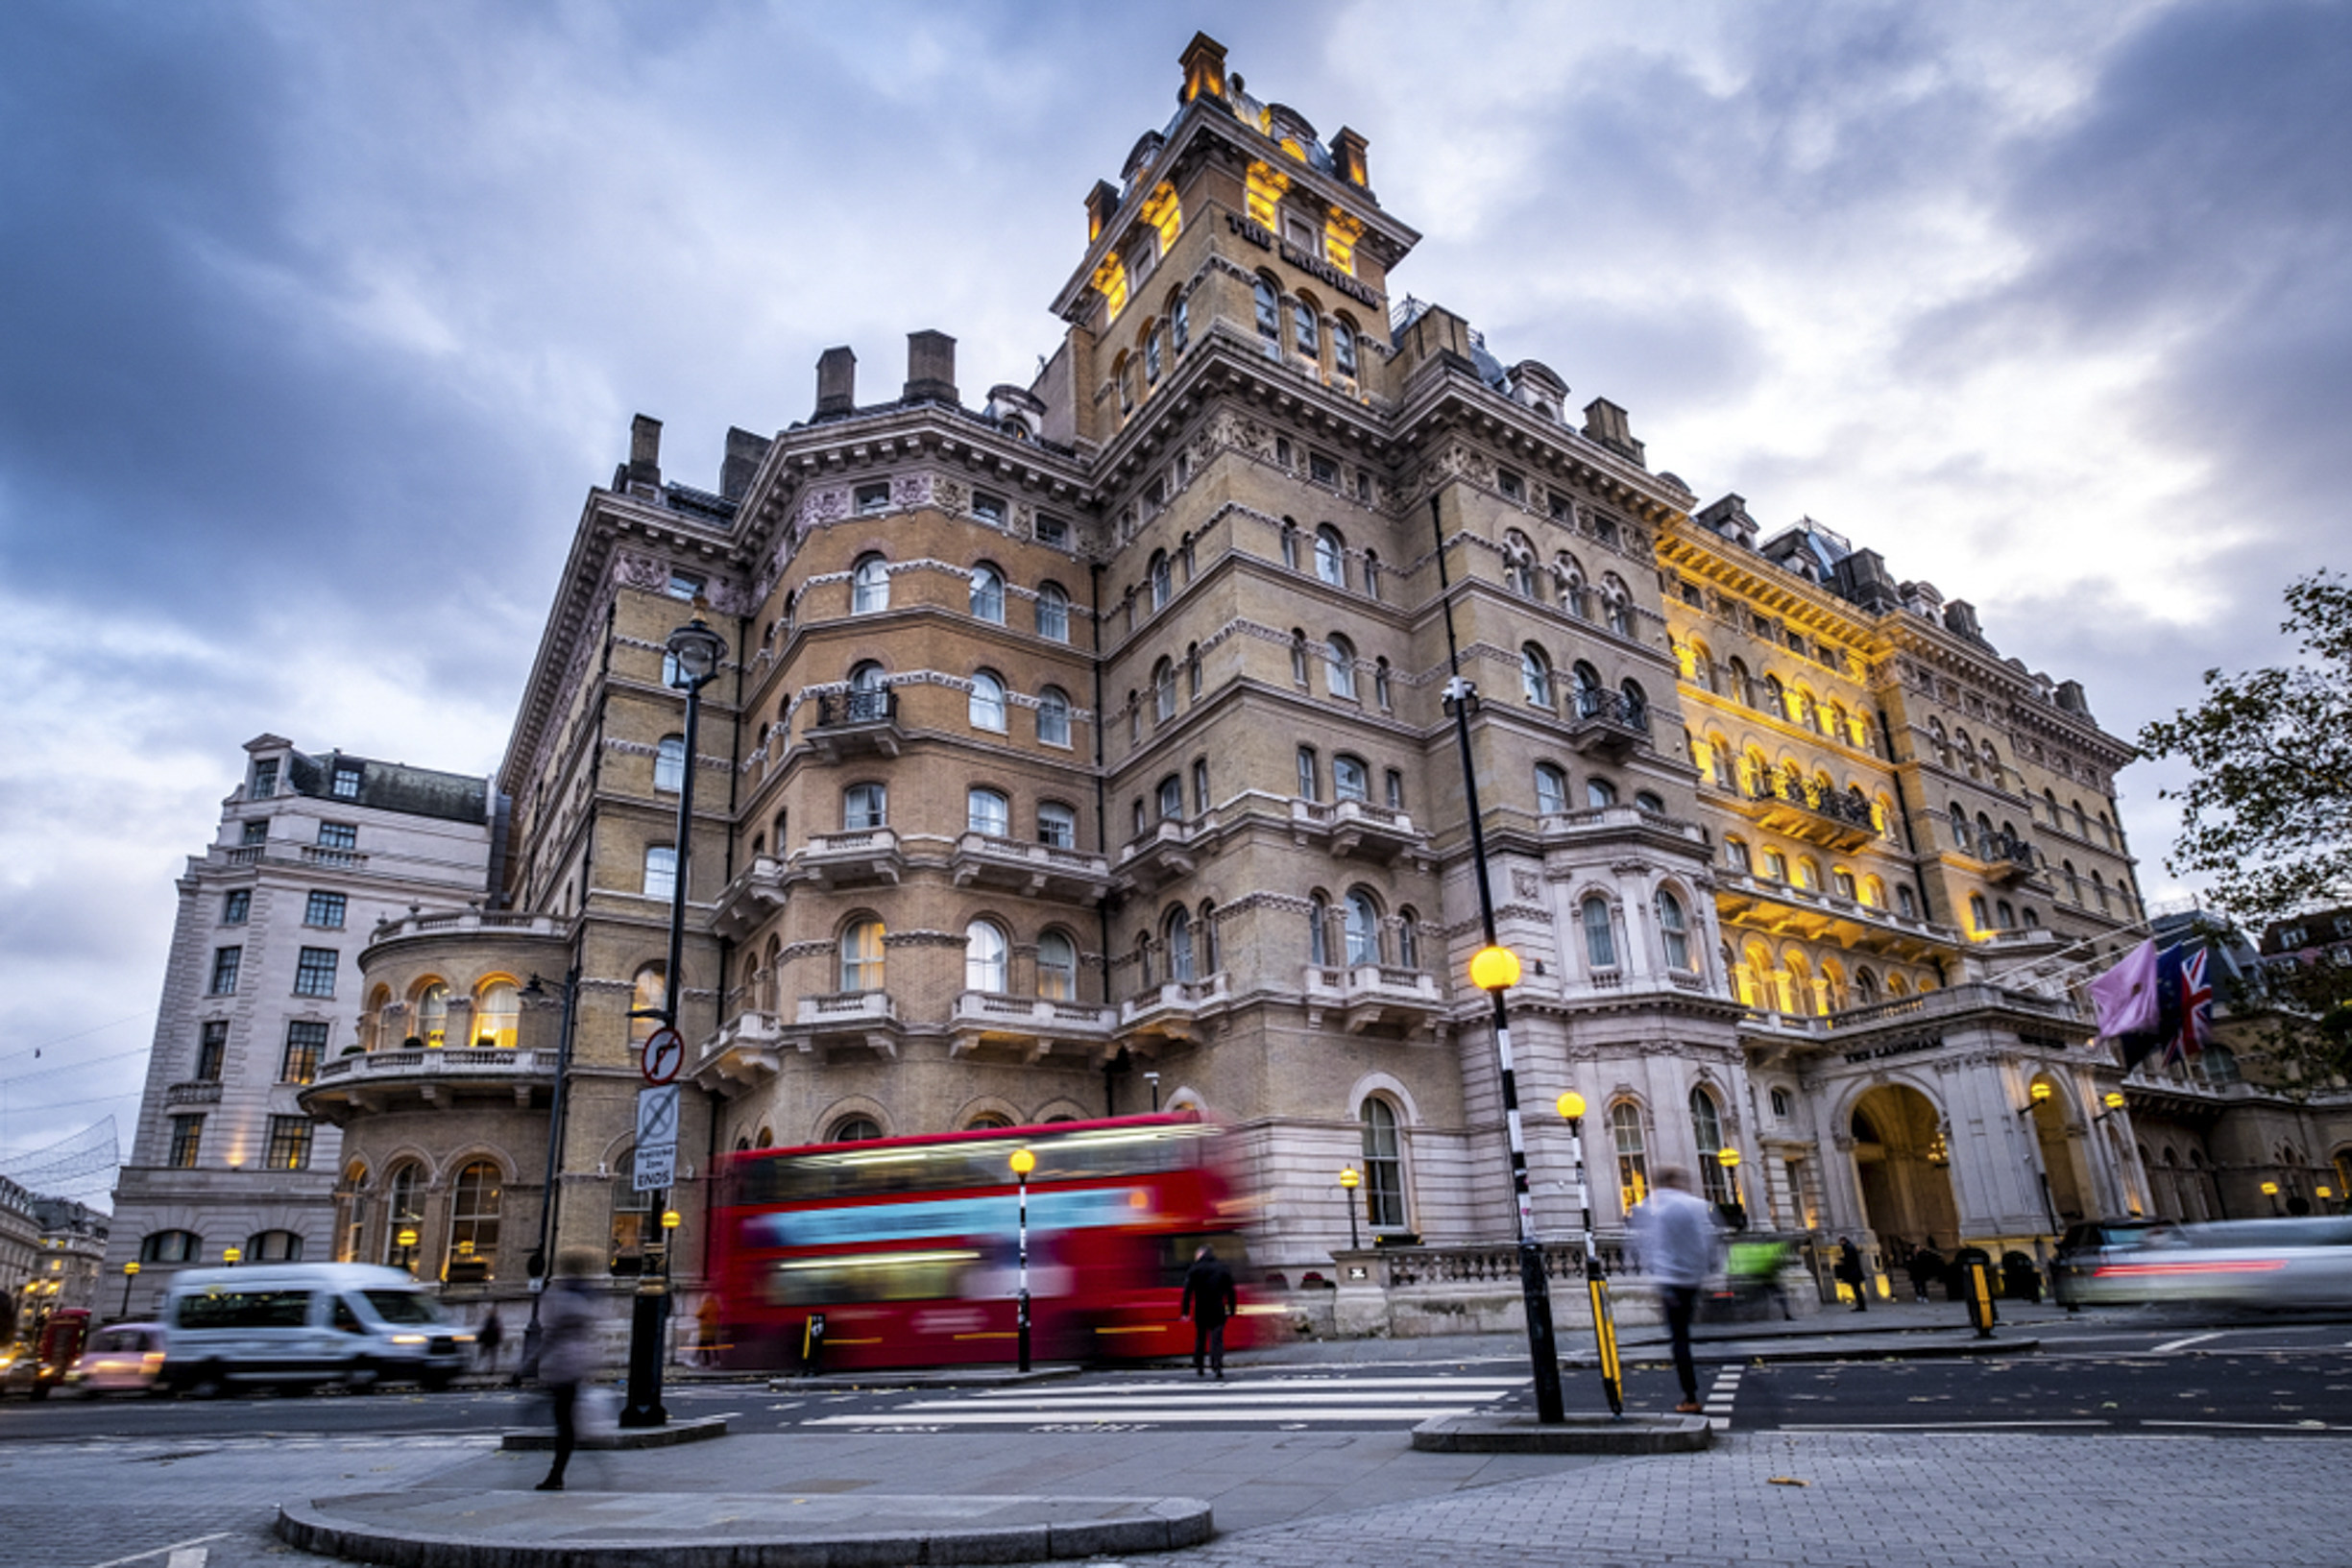 The Langham London, a five-star luxury hotel on Regent Street in London’s West End. Photo: Shutterstock